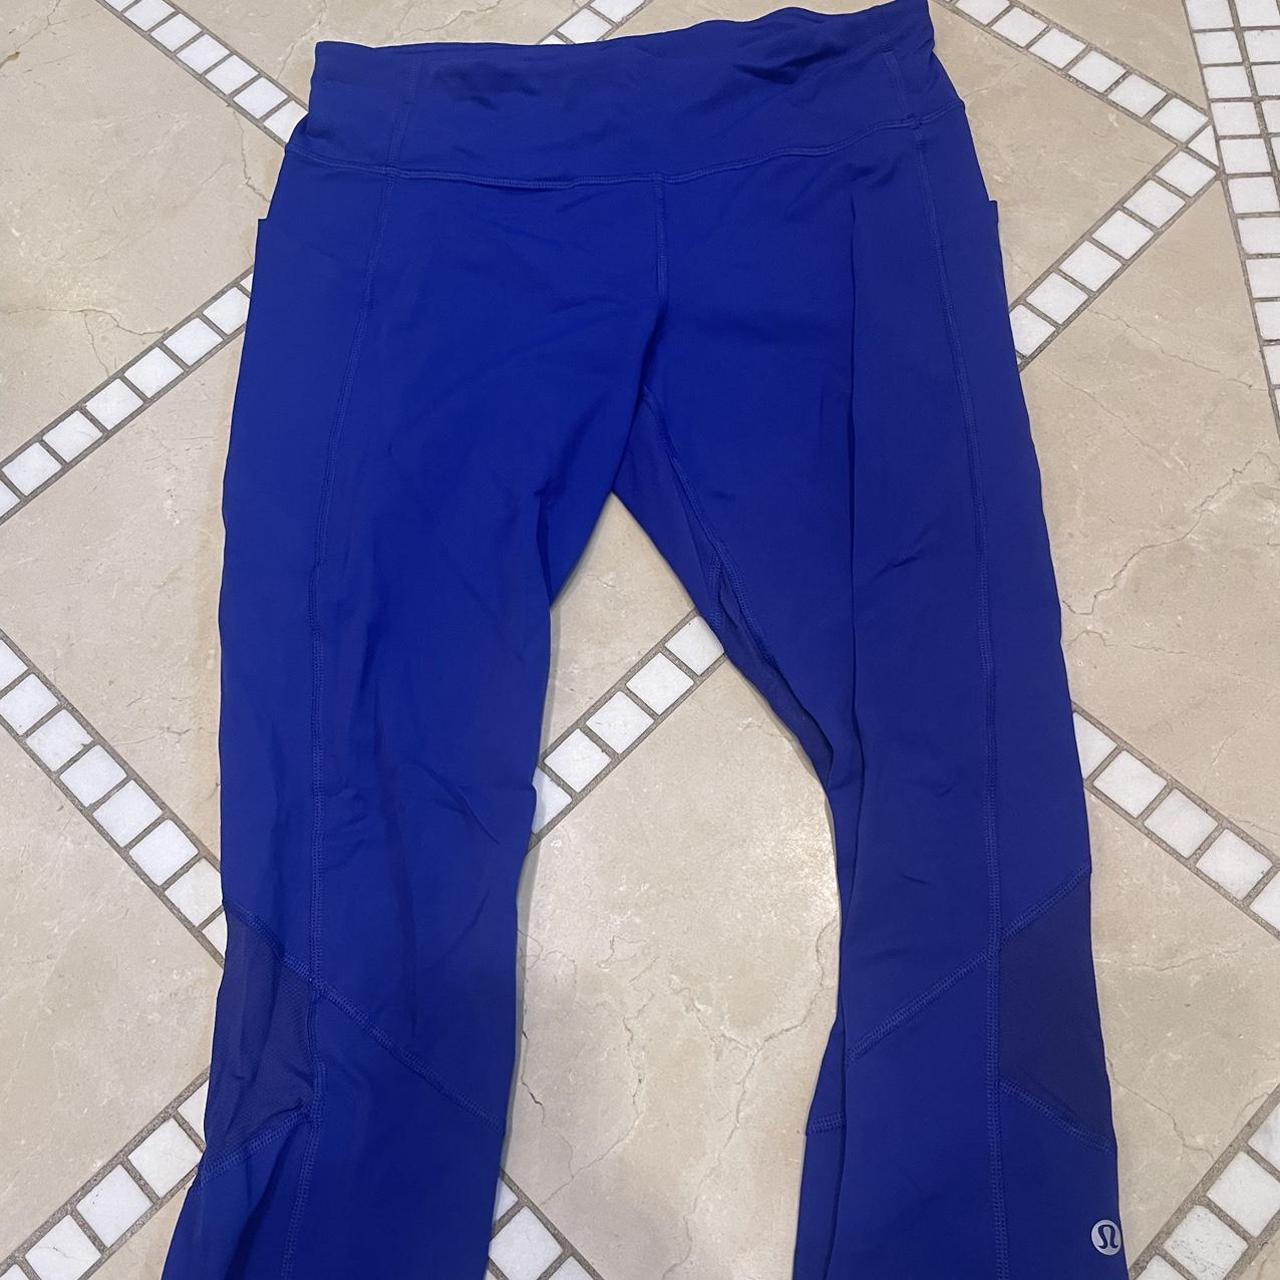 lululemon blue leggings size 8 with pockets and back... - Depop